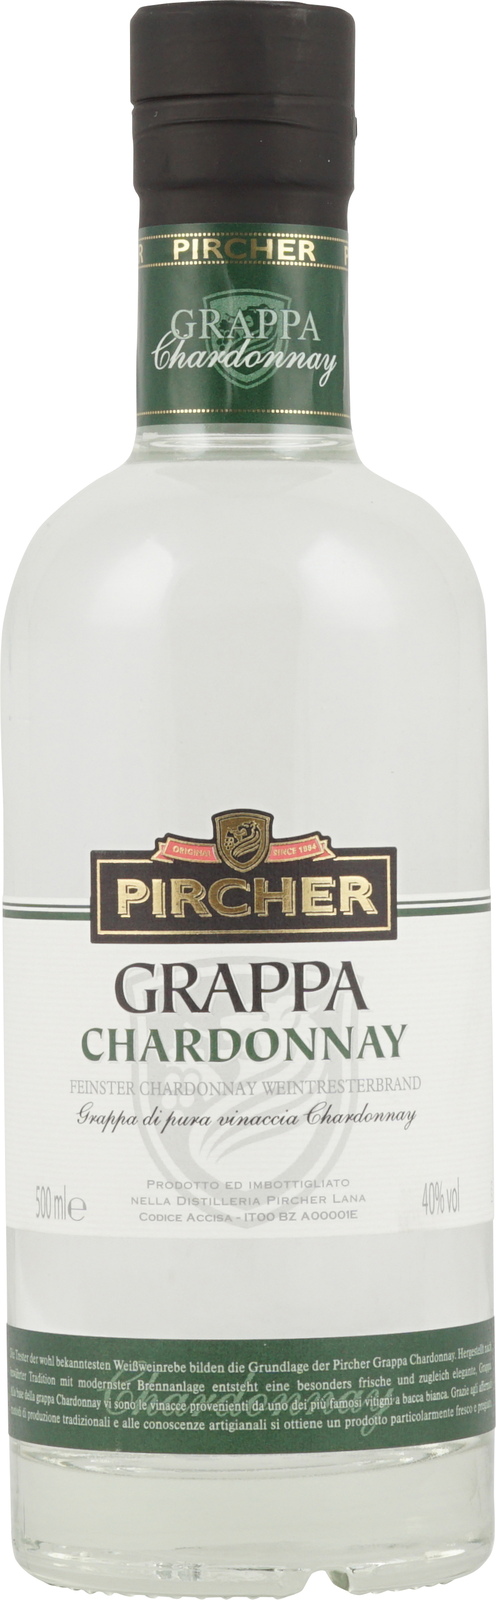 Pircher Grappa Chardonnay 40% Flasche Vol ml mit 500 in